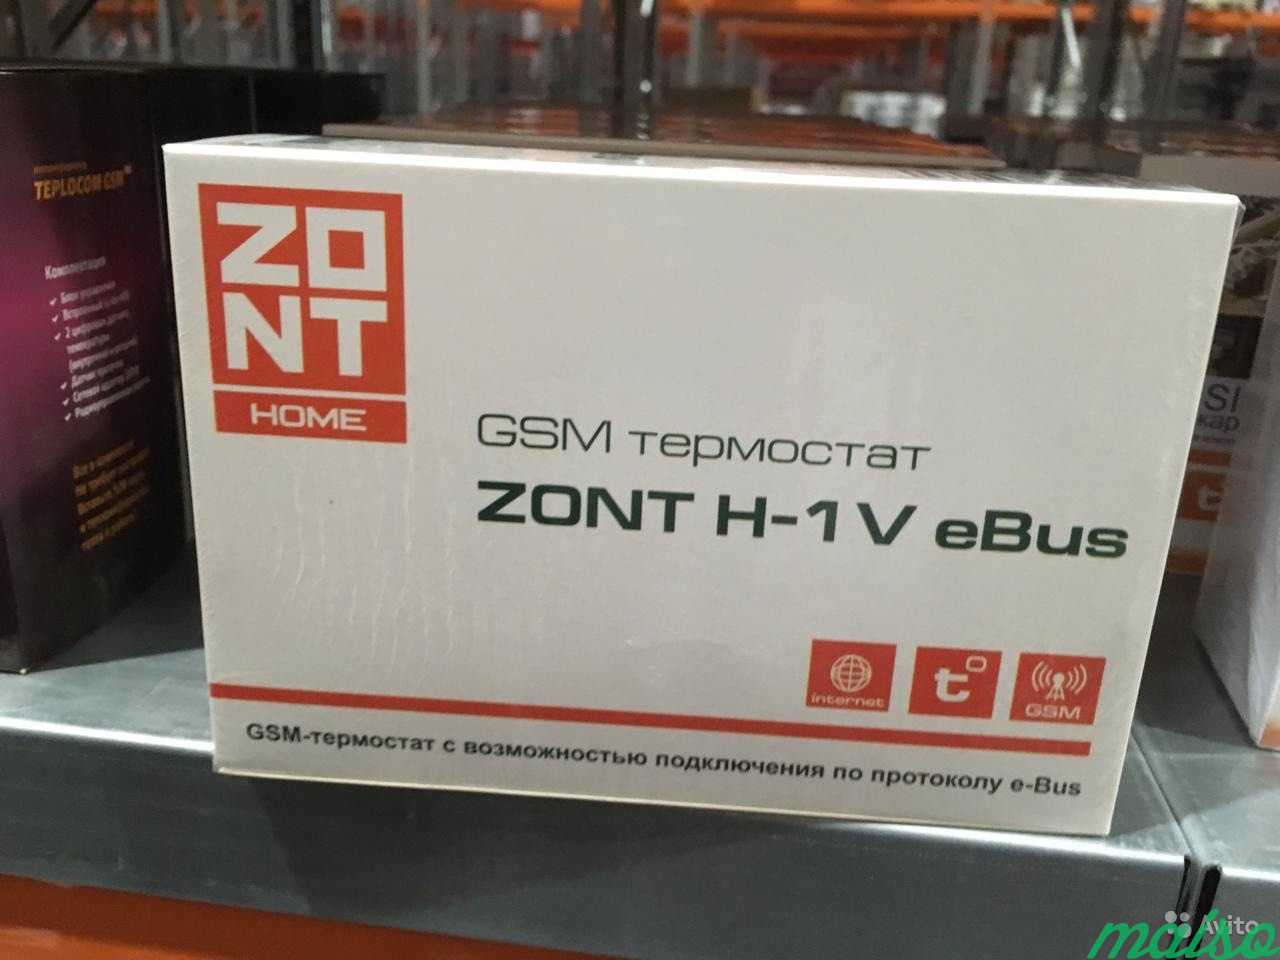 Zont v. Zont-h1v EBUS GSM-термостат. GSM термостат Zont h-1v e-Bus. GSM-термостат Zont h-1v EBUS для котлов Vaillant. ЖСМ термостат зонт h-1v.